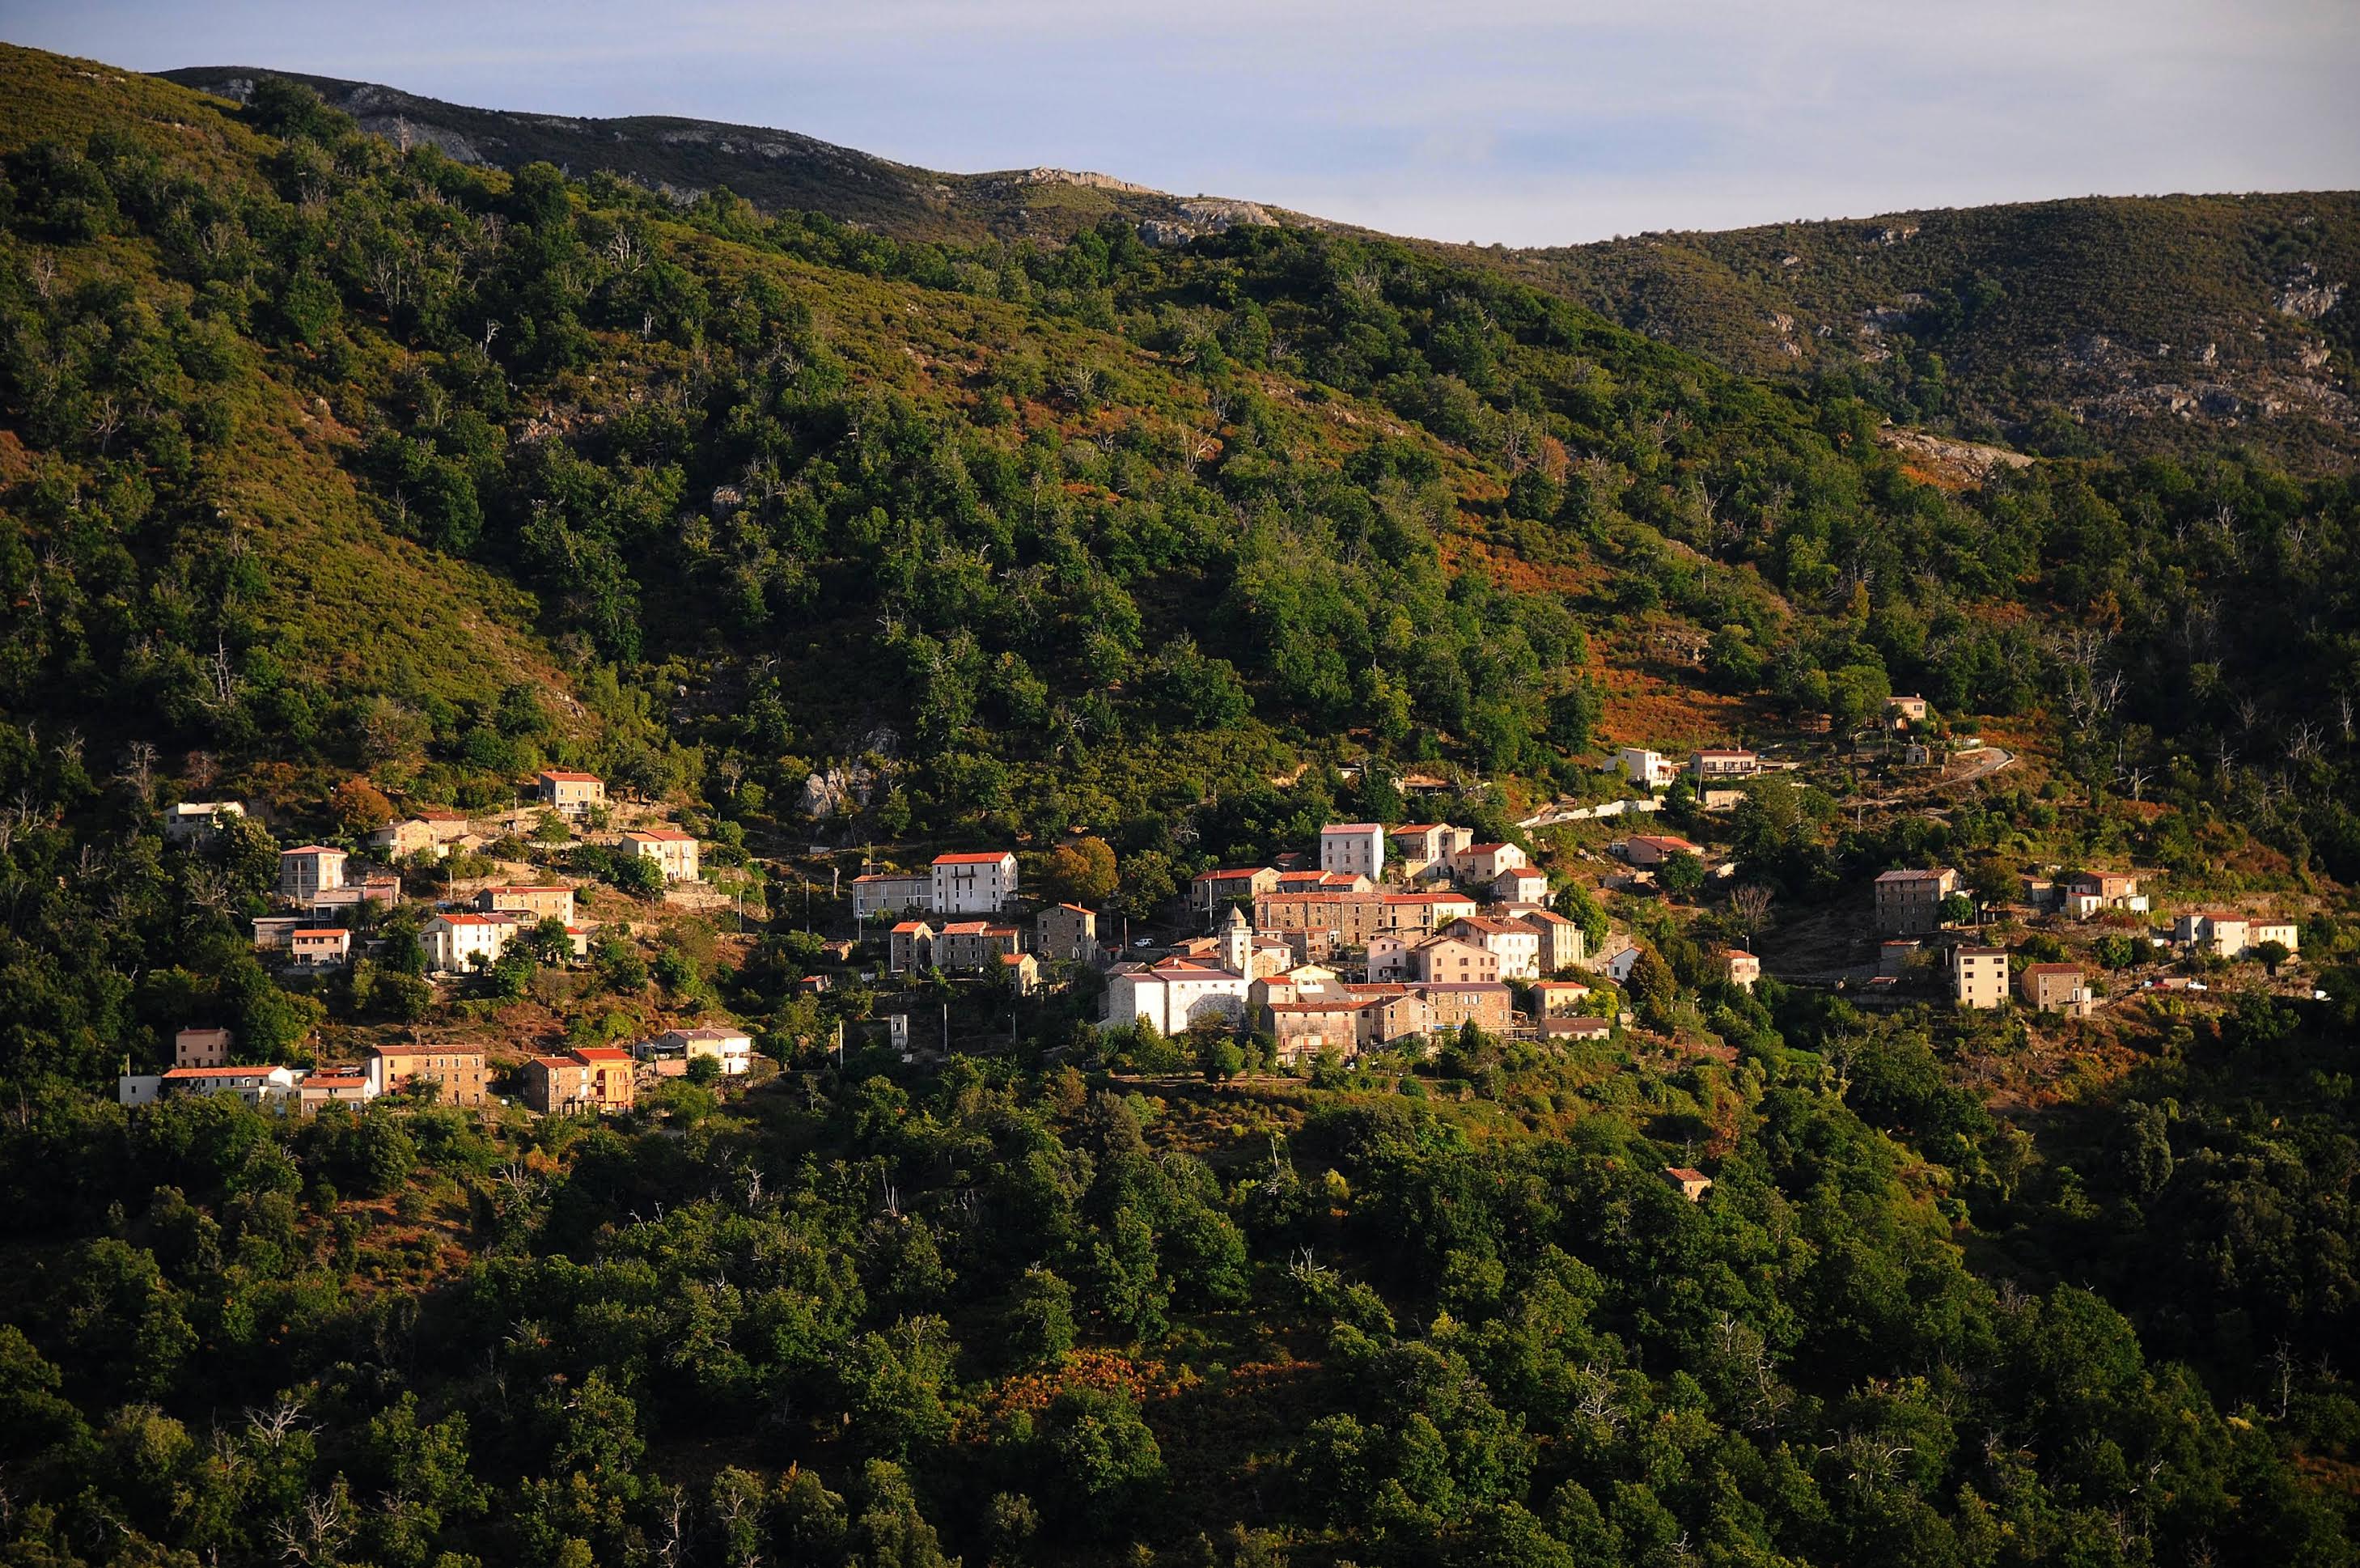 Village de Marignana (N. Robert - PNRC